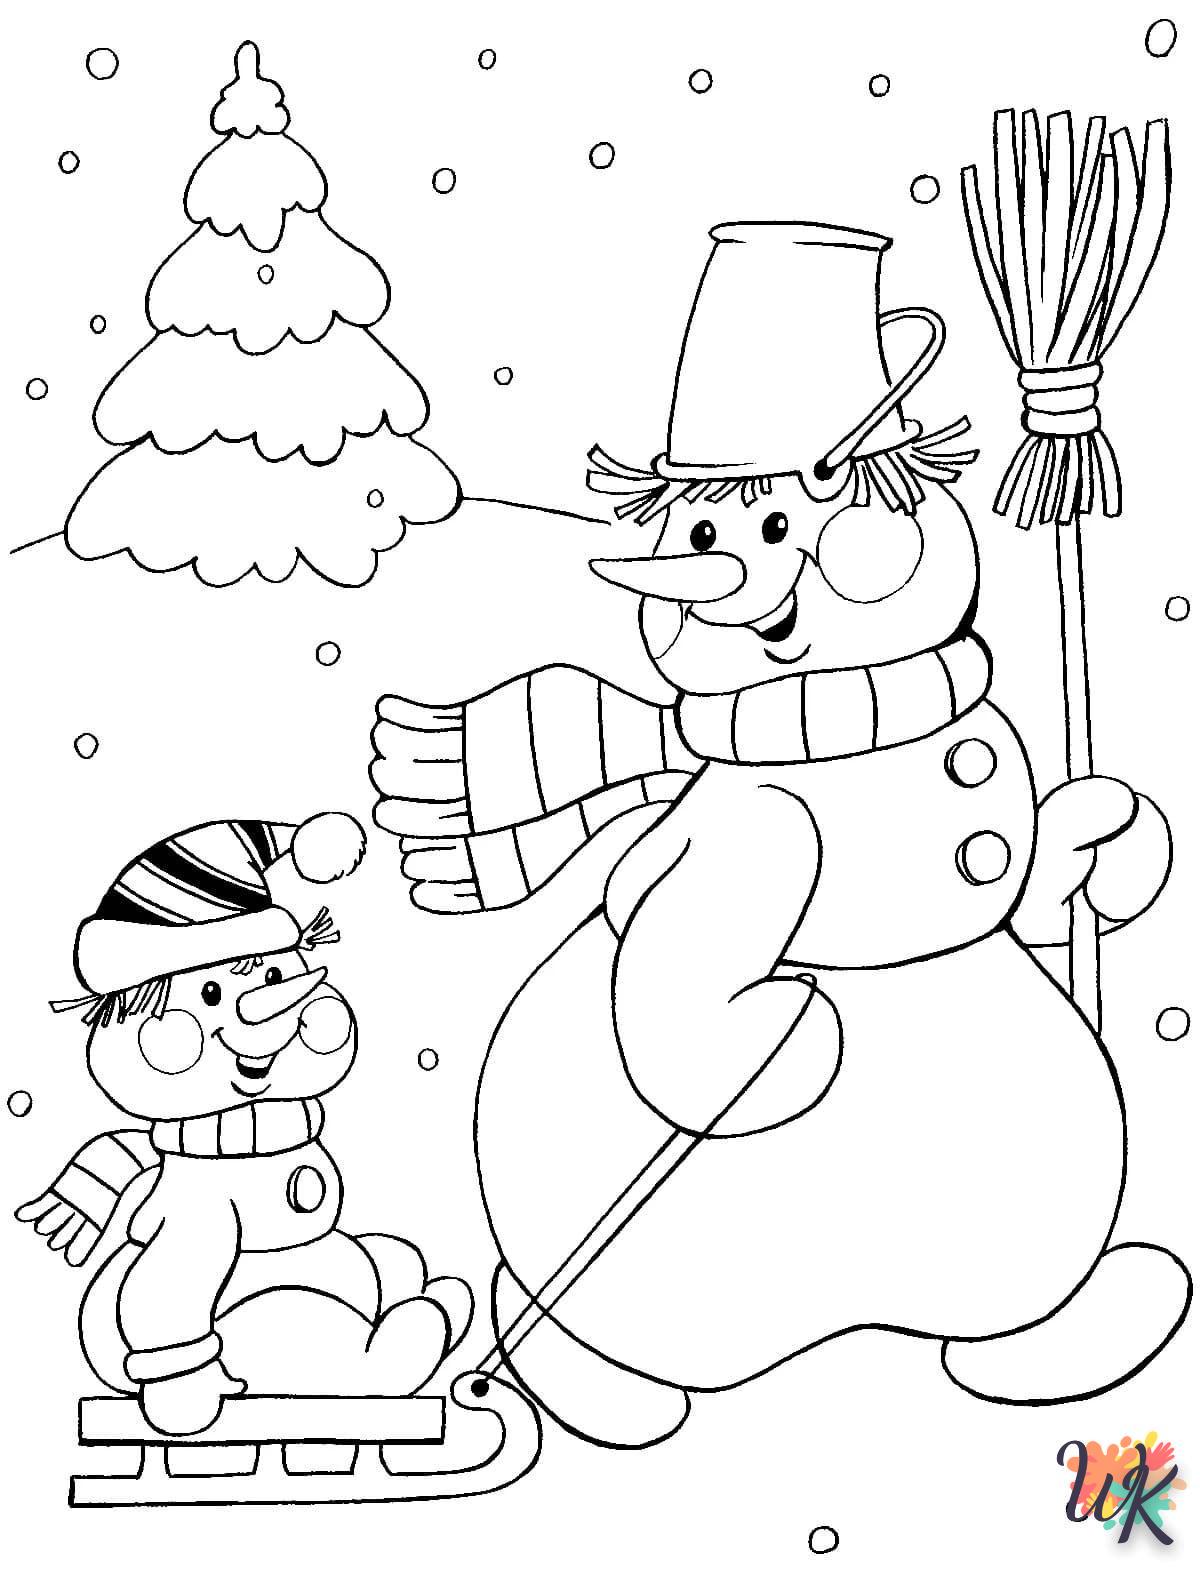 Dibujos para Colorear Muneco de nieve 24